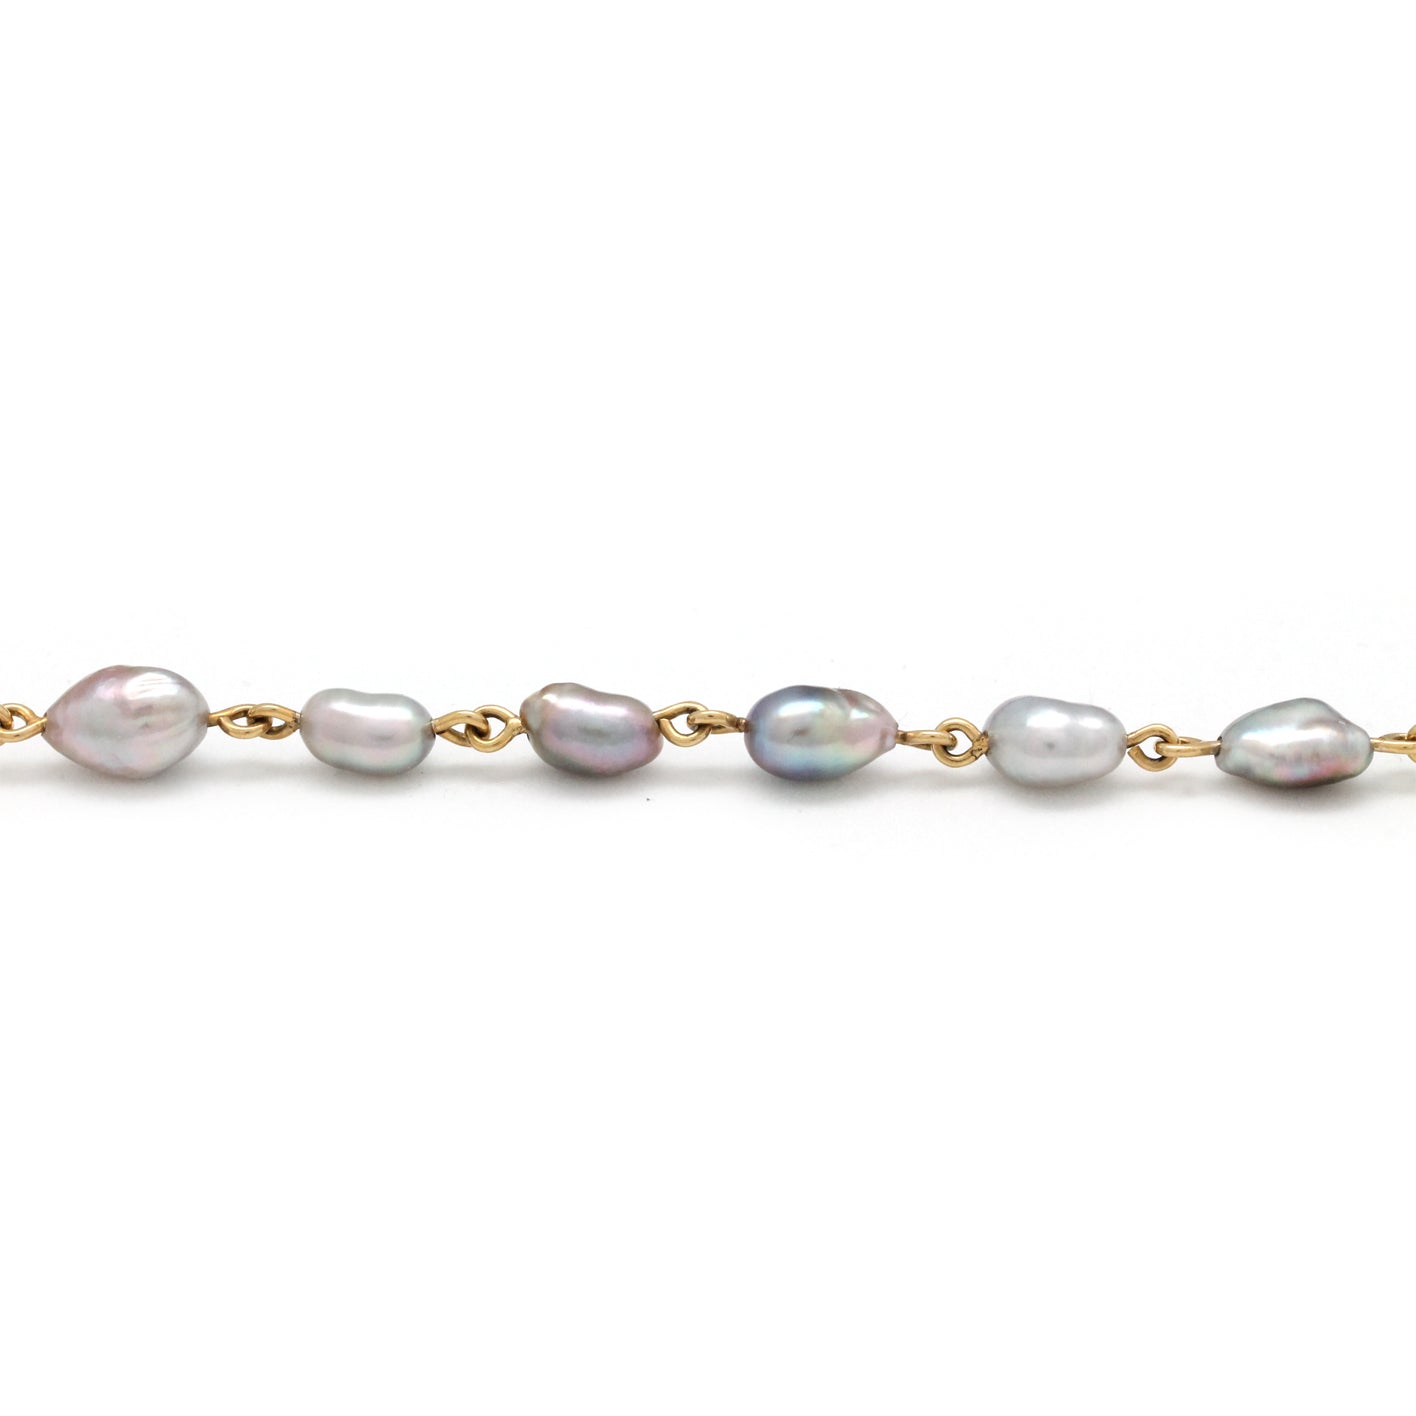 Light Iridescent Keshi Pearls on 14K Gold Bracelet